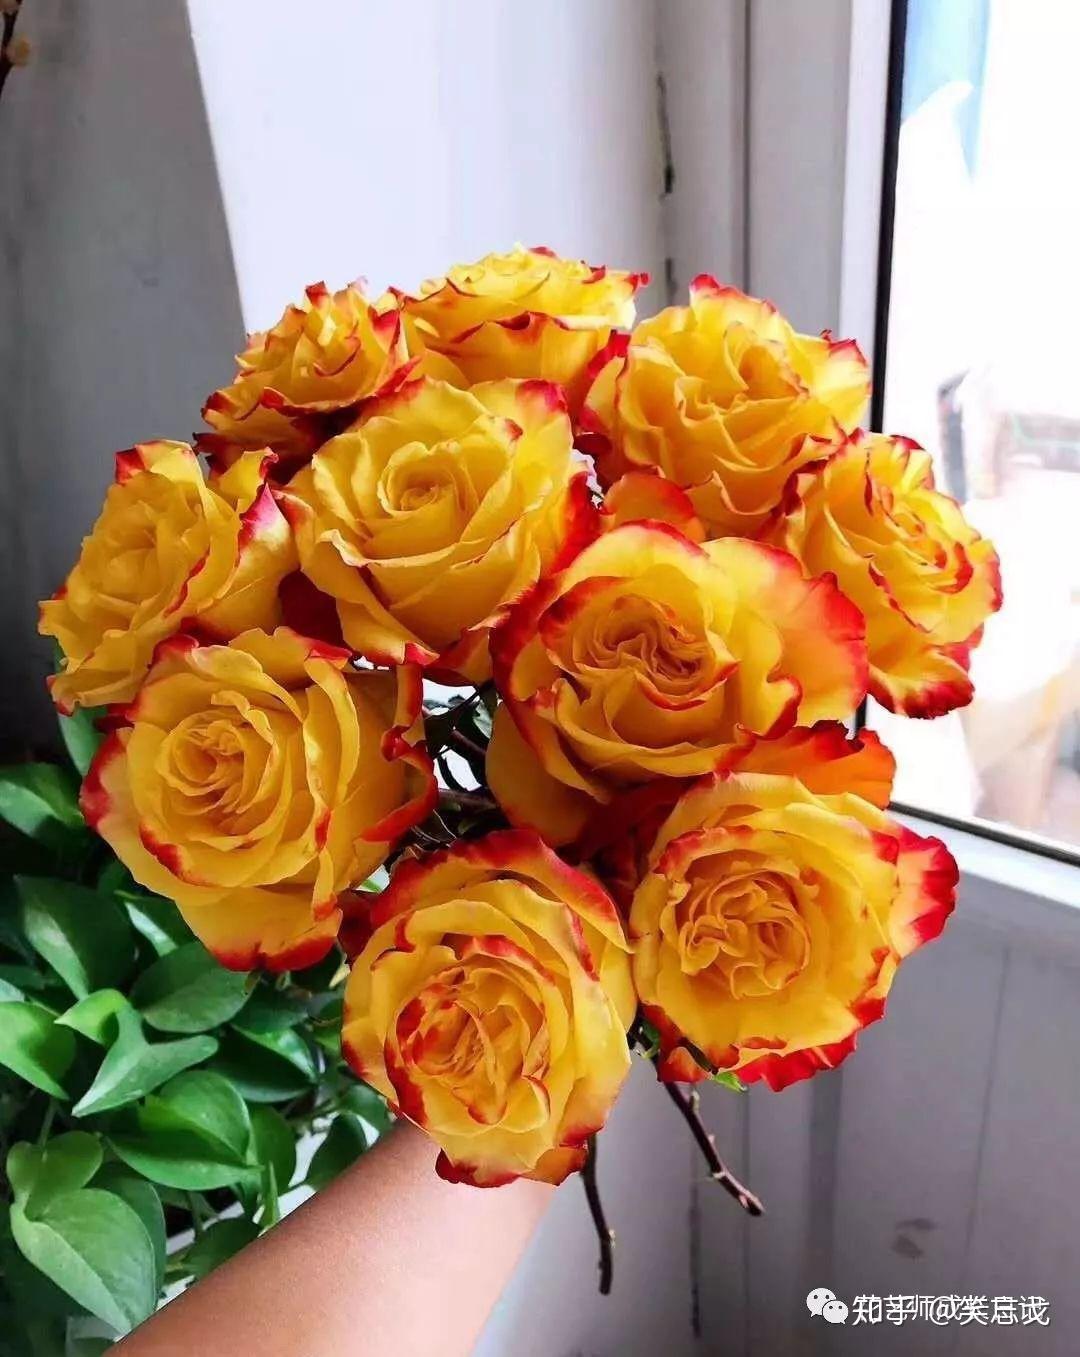 玫瑰 鲜花 红玫瑰 · Pixabay上的免费照片